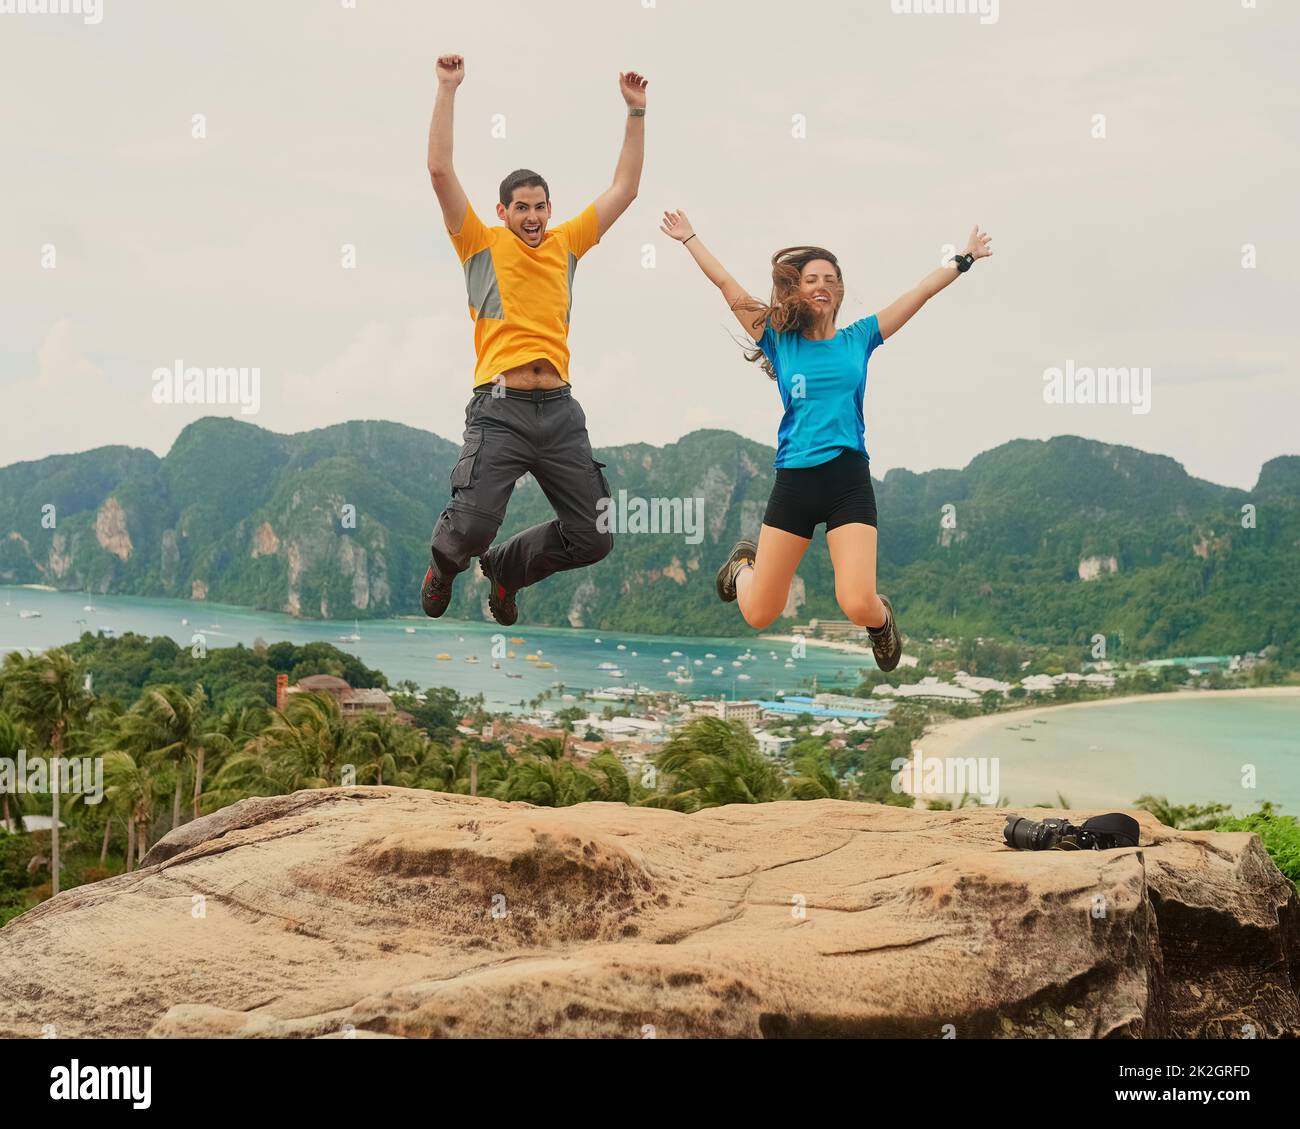 Wir lieben das Inselleben. Aufnahme eines glücklichen jungen Paares, das vor einer Insellandschaft springt. Stockfoto